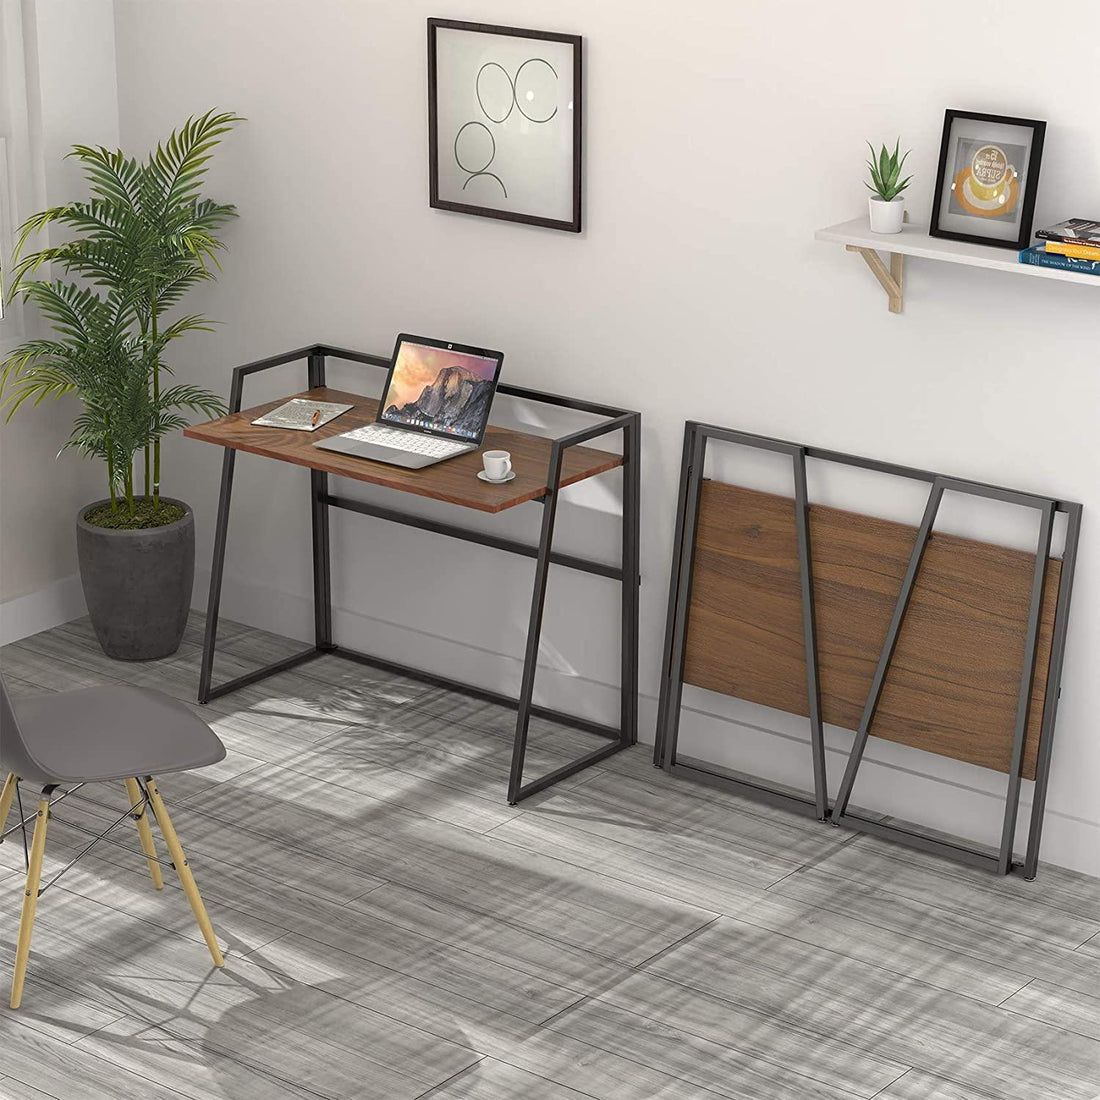 Kompakter und moderner Designer Klapp-Schreibtisch (Empfehlung) - Smarter Home Office - Home Office Zubehör und Ausstattung für Remote Arbeiter